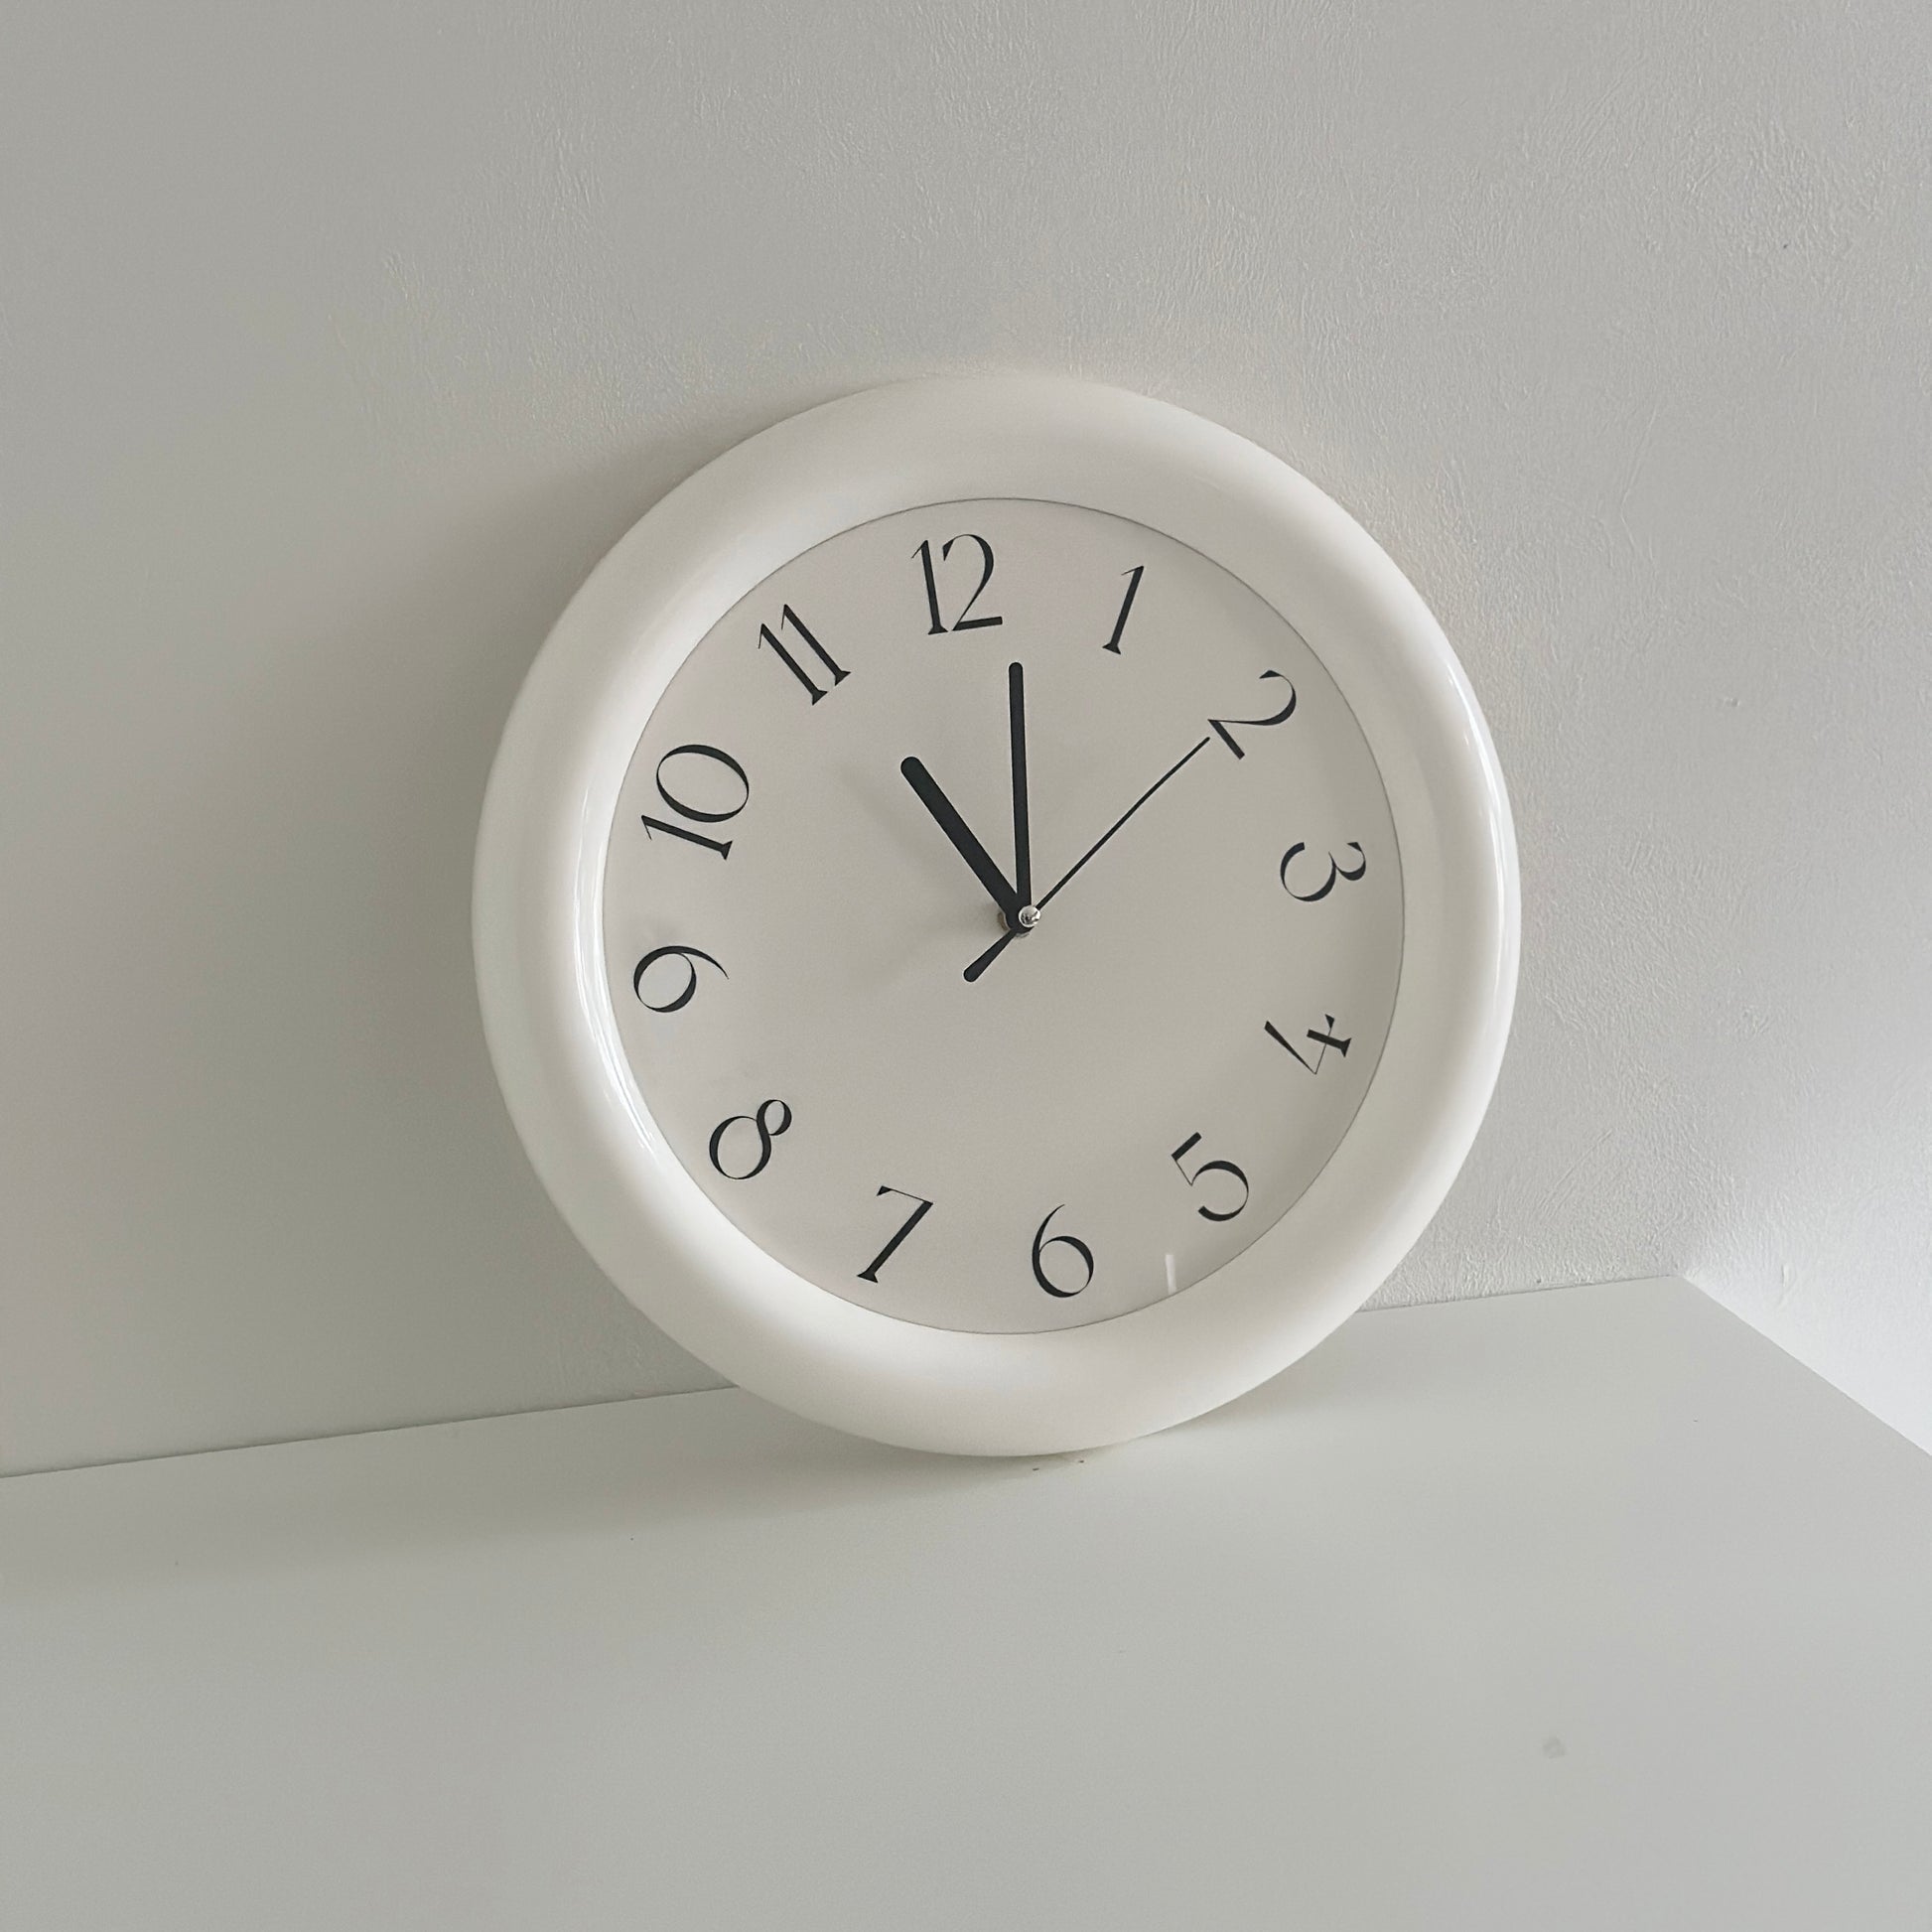 フチがぽってりとした形のシンプルな掛け時計